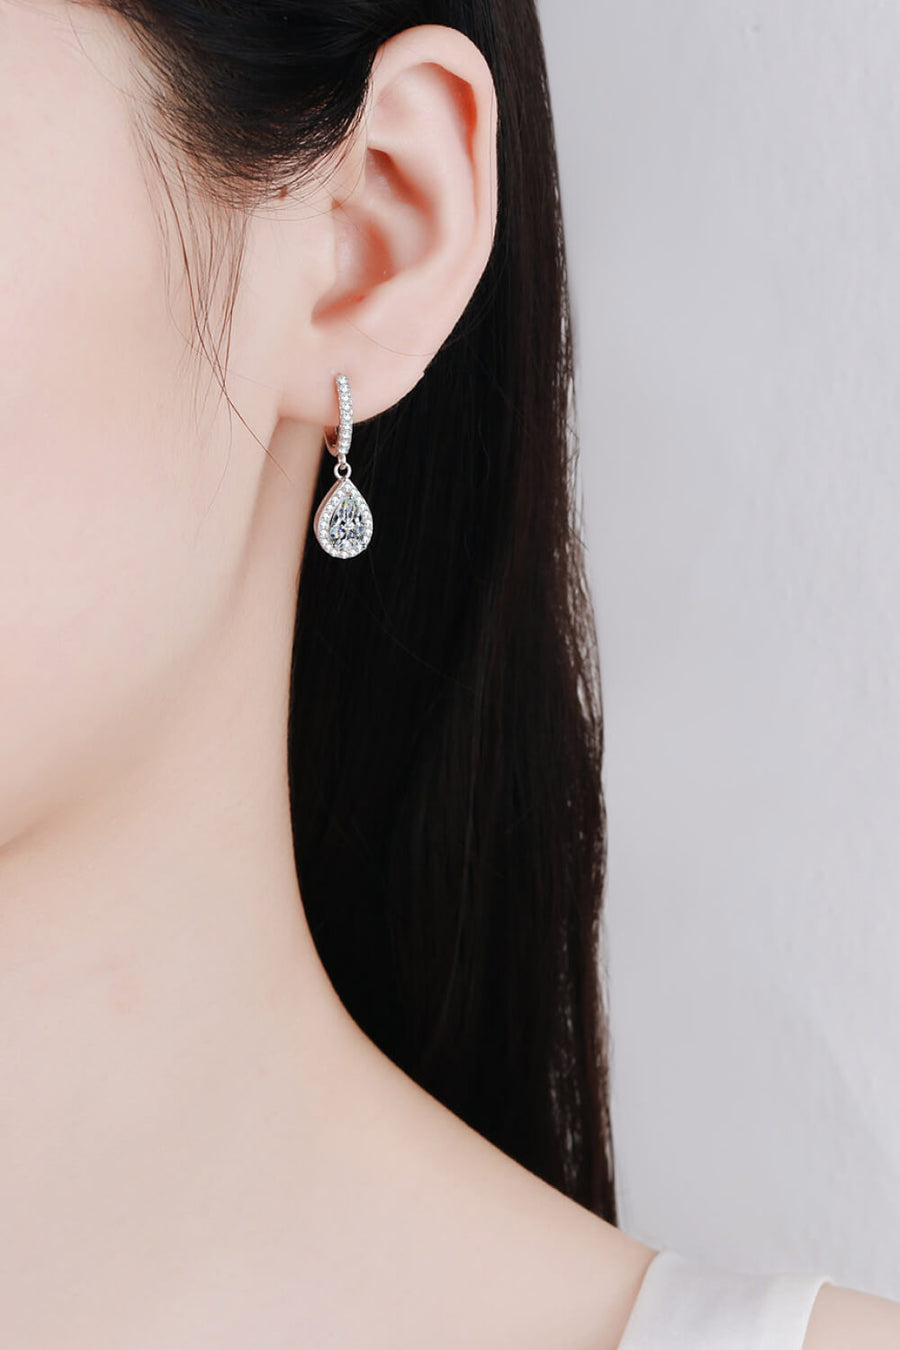 Best Diamond Earrings Jewelry Gifts for Women | 2 Carat Pear Diamond Teardrop Earrings | MASON New York